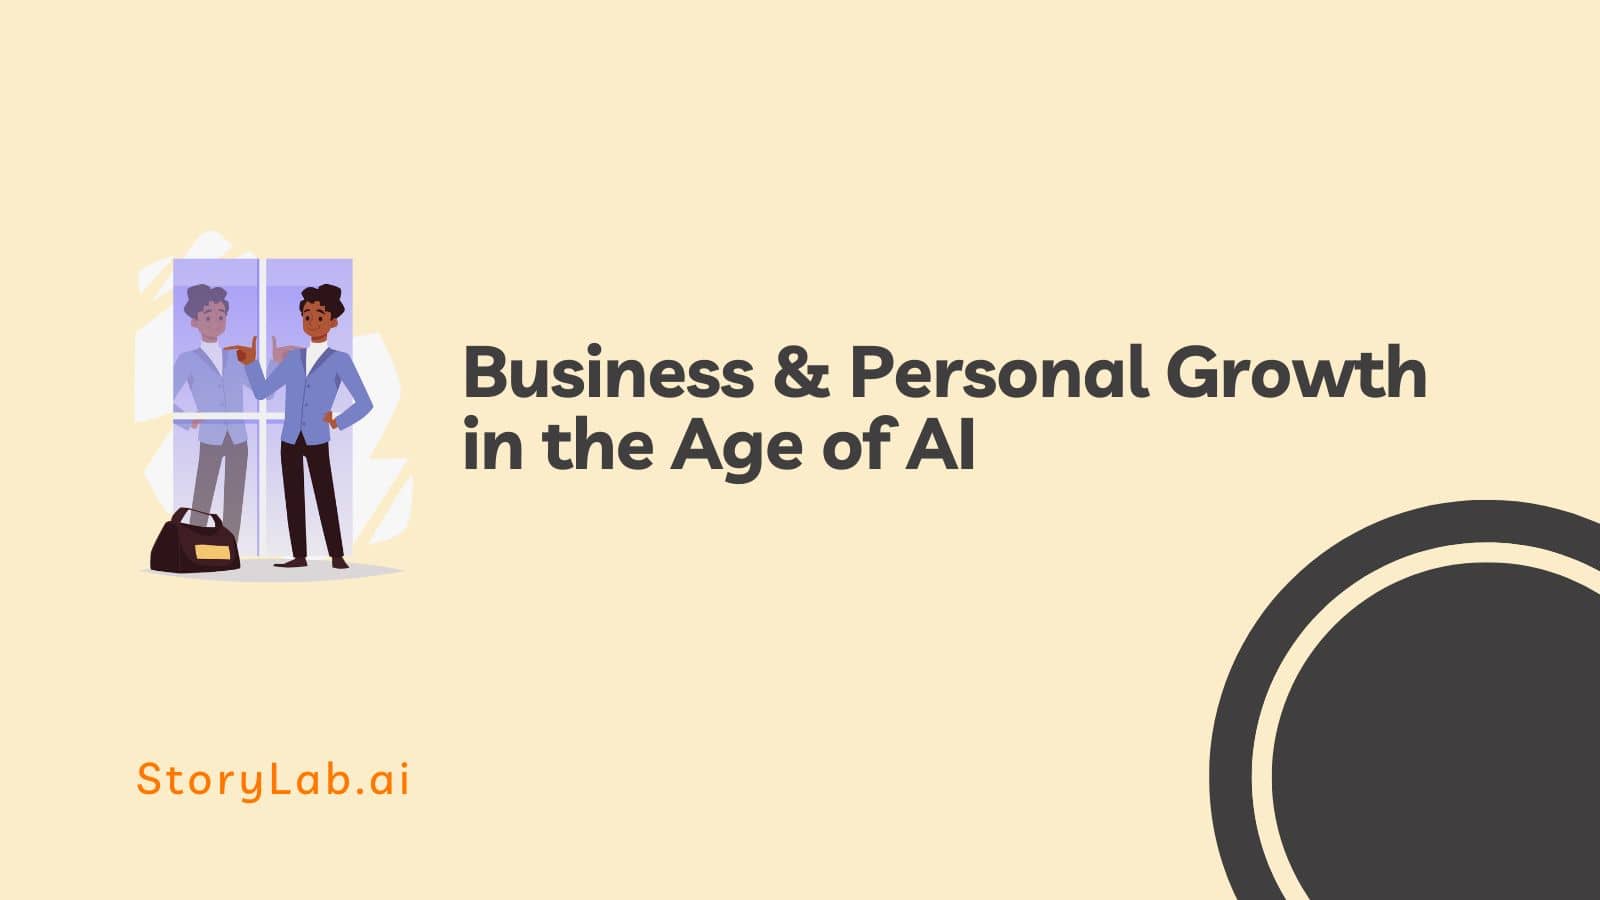 Crescita aziendale e personale nell’era dell’intelligenza artificiale